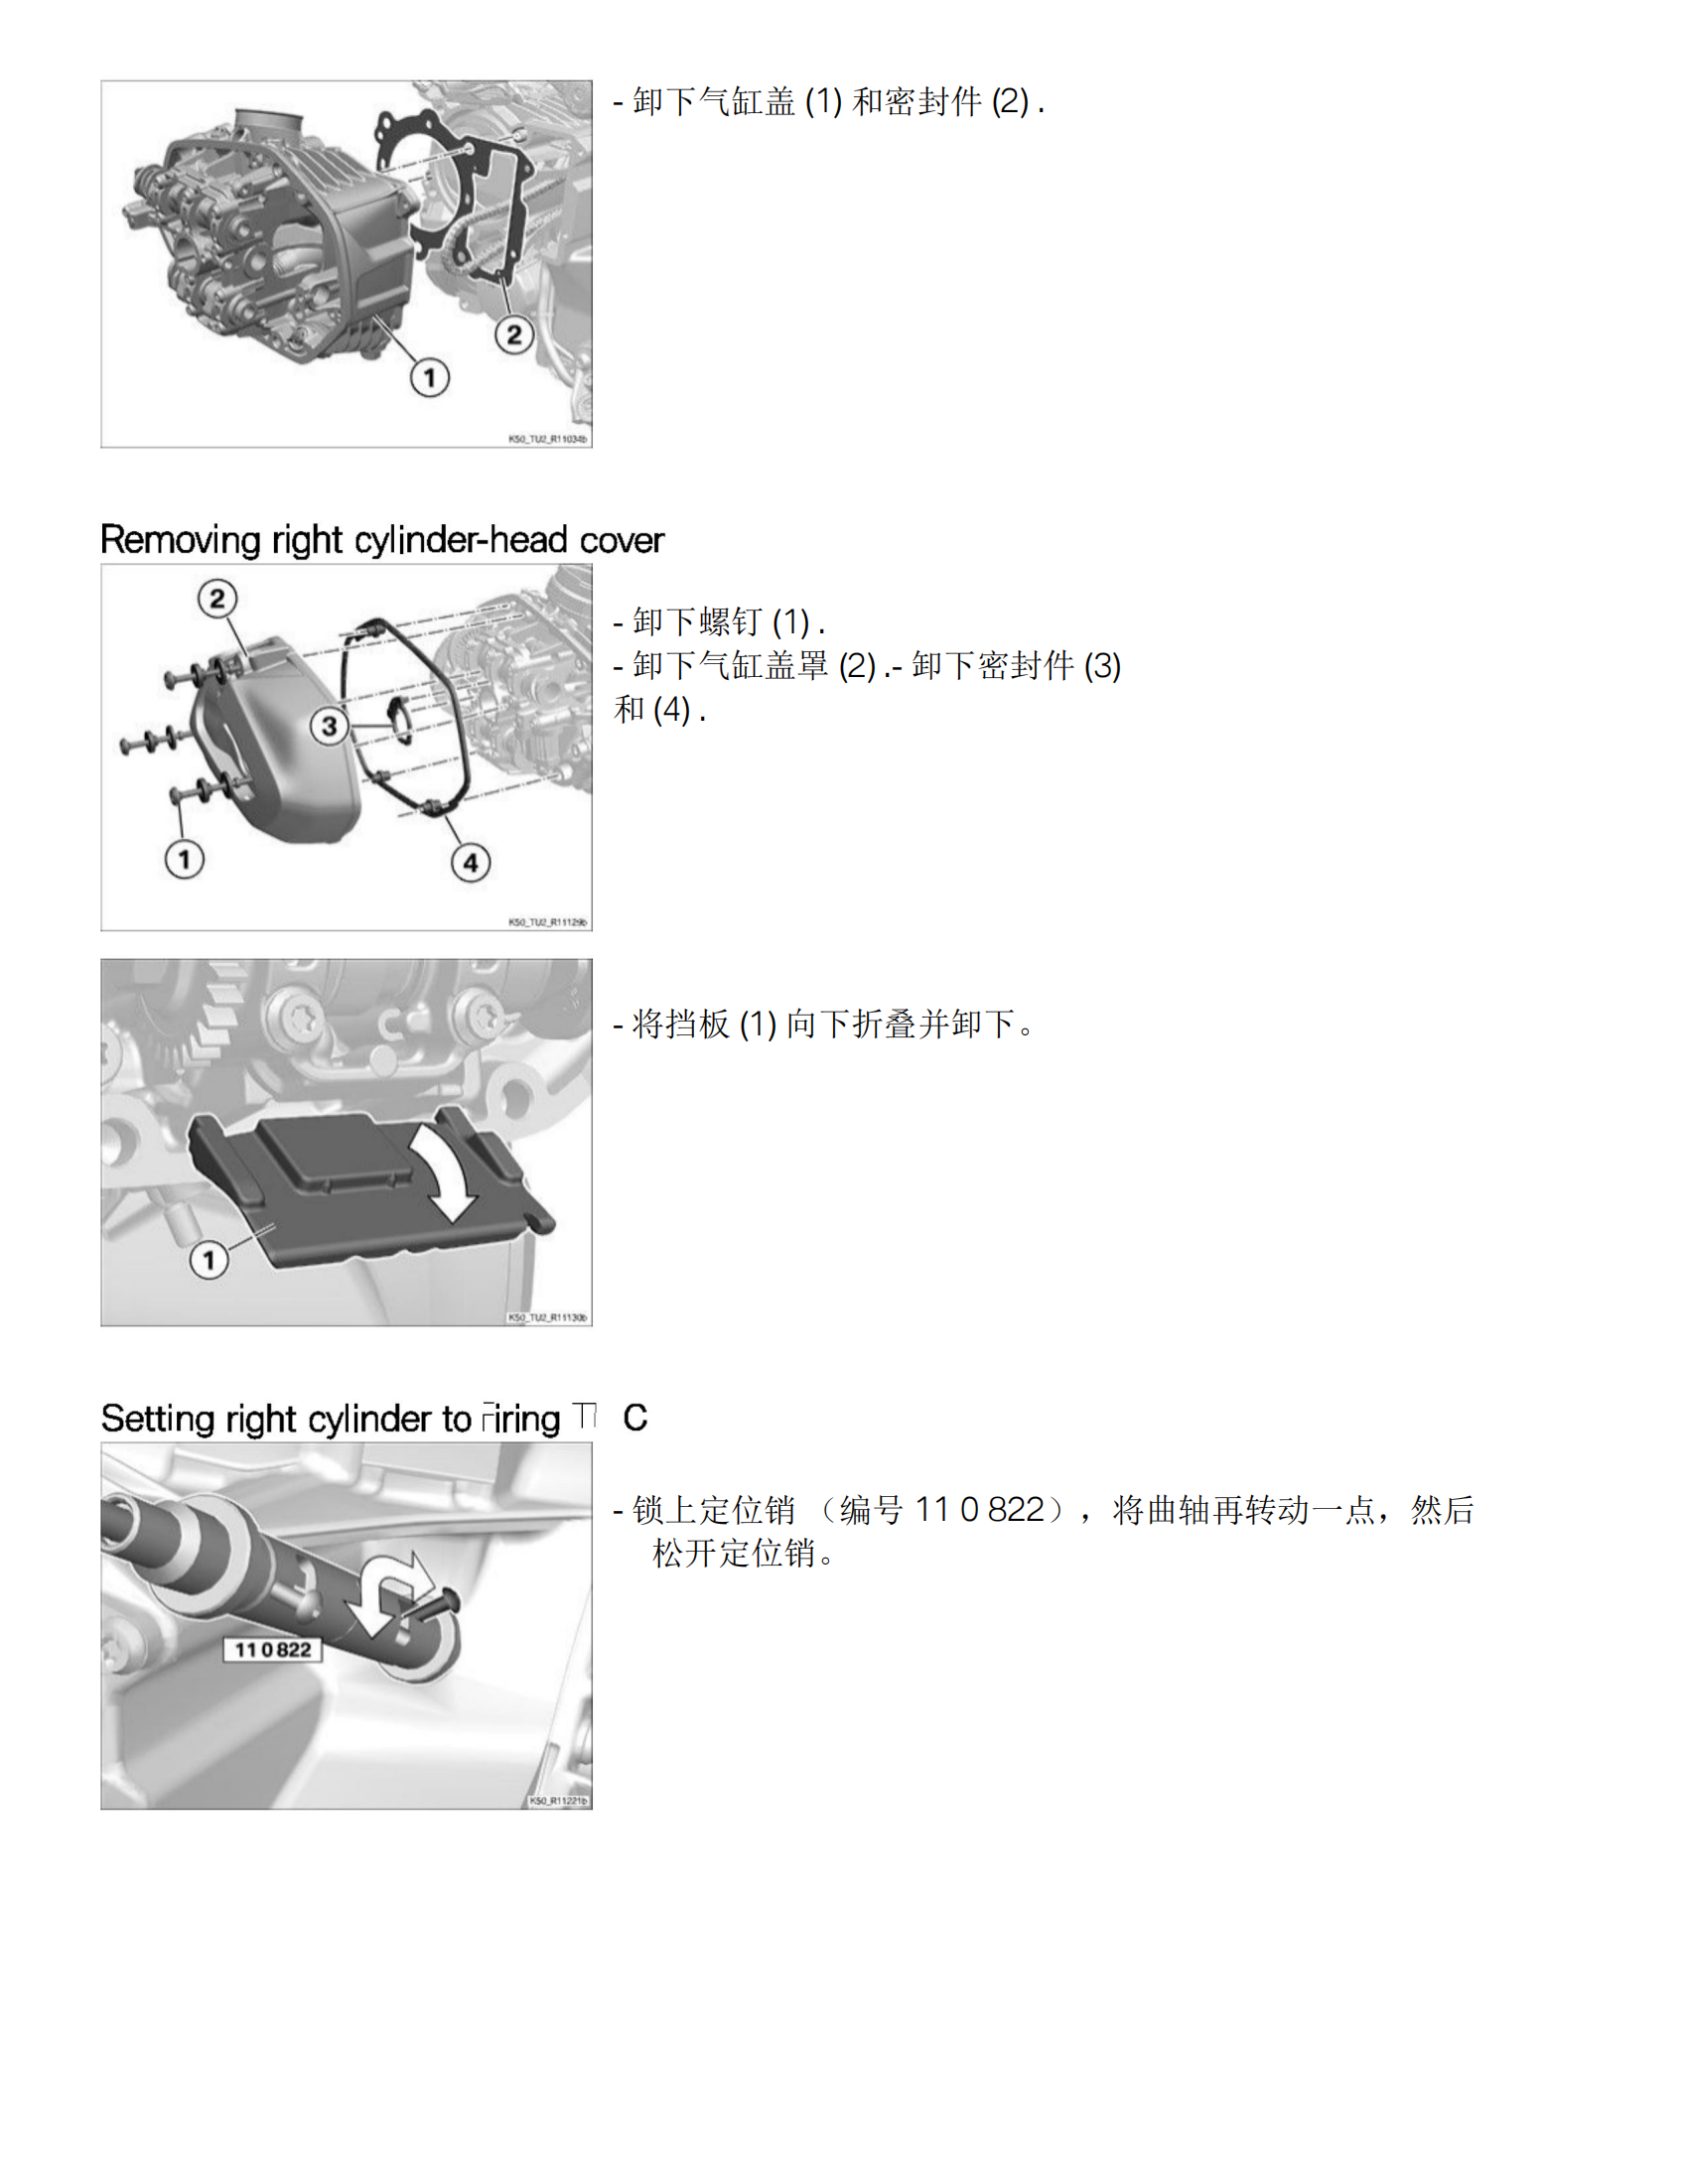 简体中文2021-2023年宝马1250 GS Adventure维修手册宝马水鸟维修手册插图2